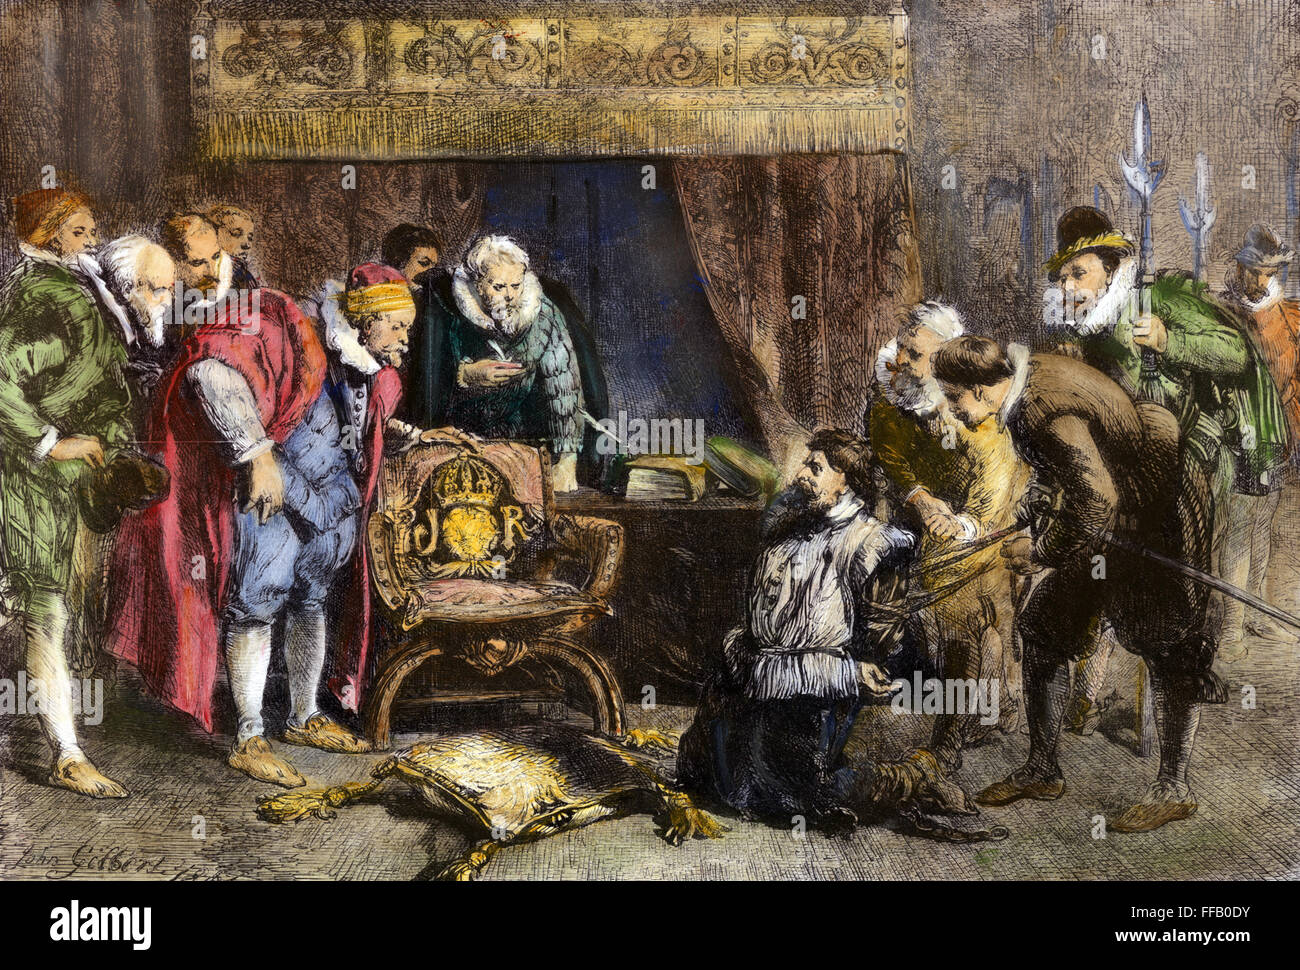 SCHIEßPULVER-PLOT, 1605. / nGuy Fawkes (1570-1606) verhört von König James I und seinen Rat im Schlafgemach des Königs in Whitehall, folgende Entdeckung der "Gunpowder Plot" zu sprengen, die Houses of Parliament, 5. November 1605. Holzstich, 1861 Stockfoto